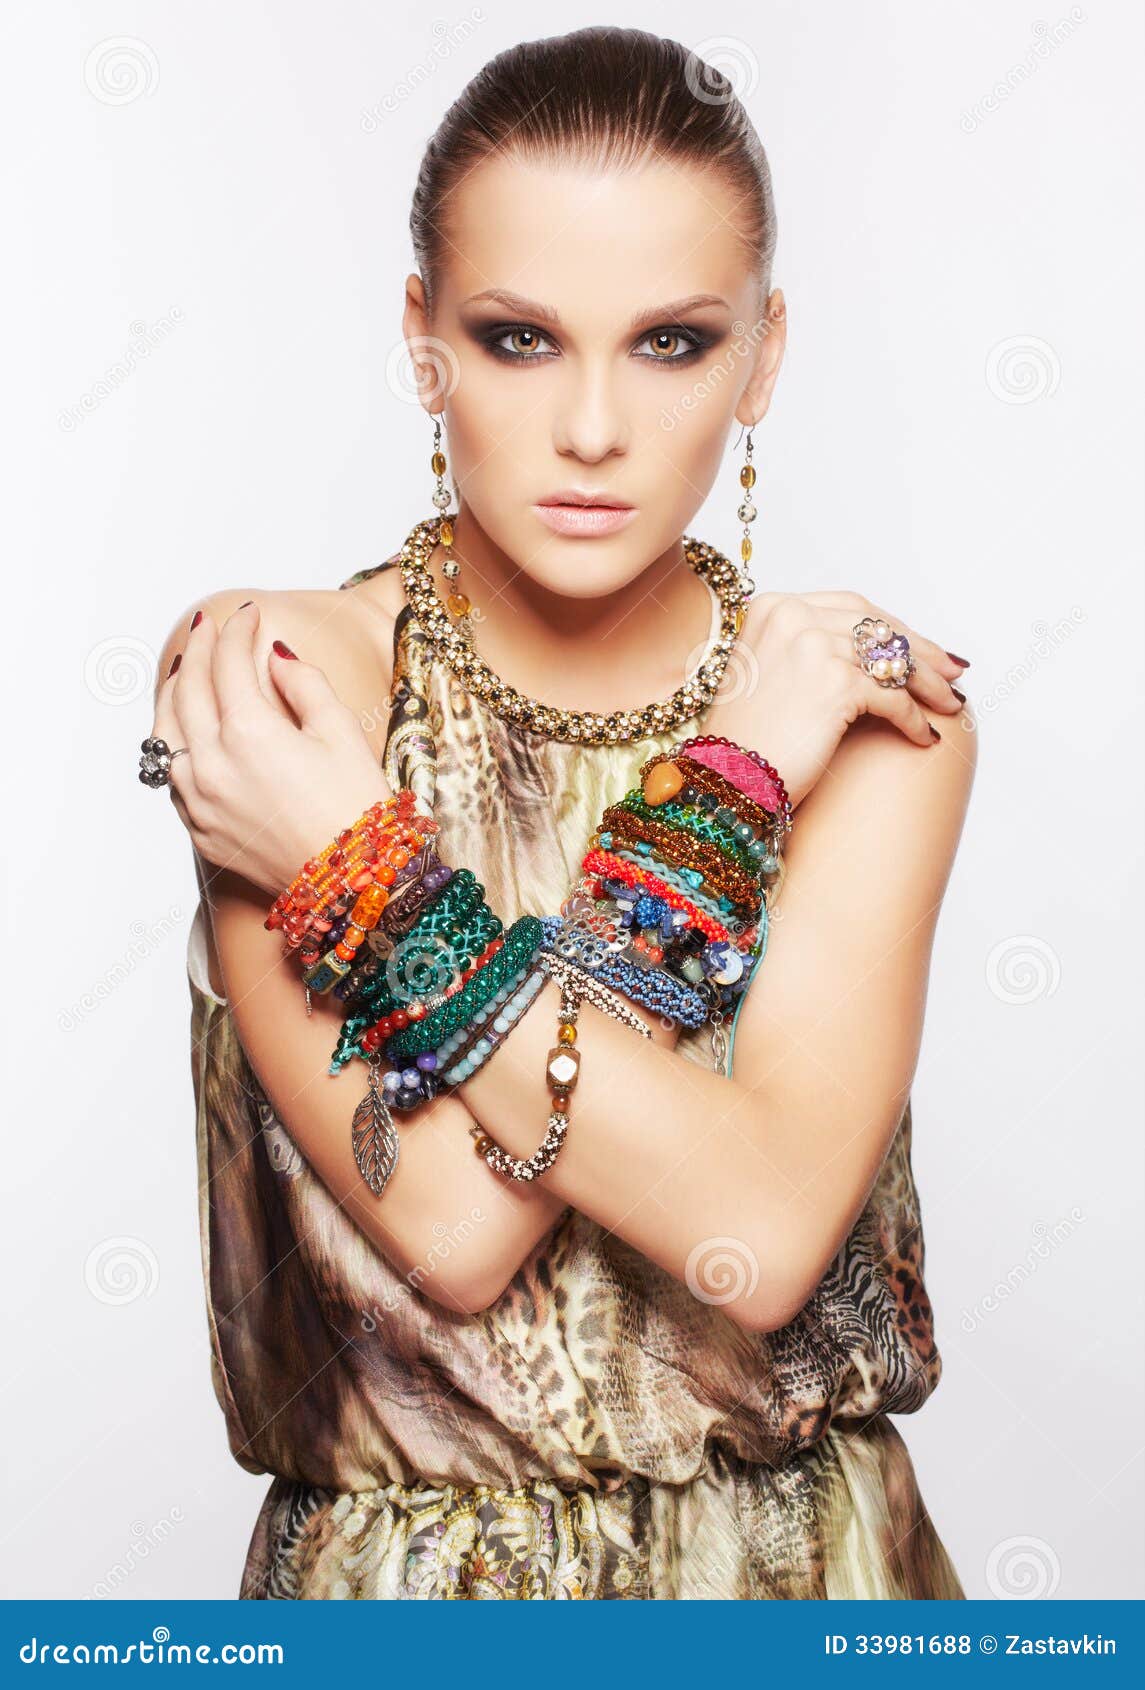 Beautiful woman in jewelry stock photo. Image of beautiful - 33981688